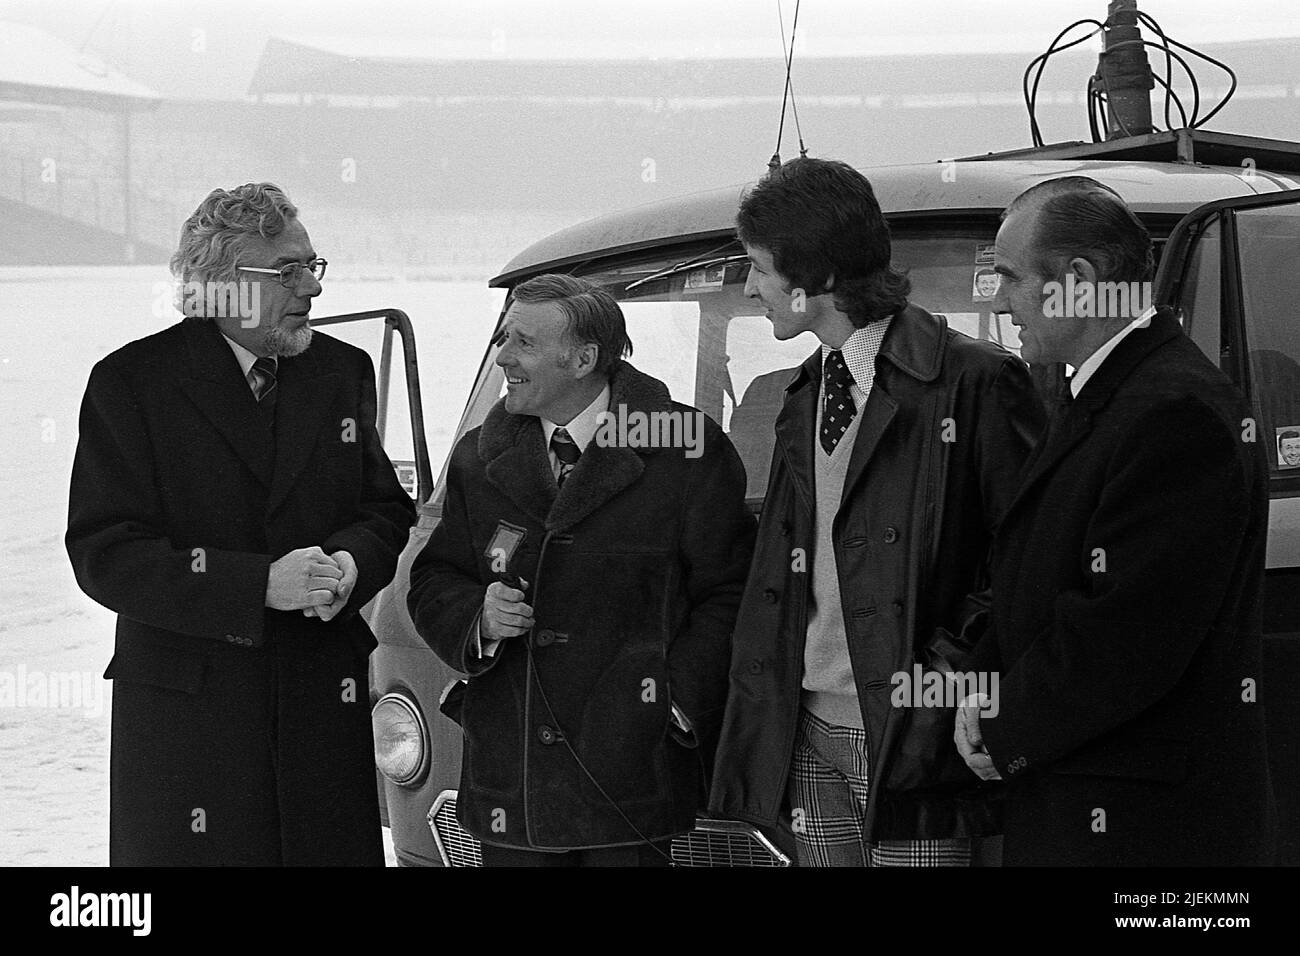 Una BBC radio al di fuori della trasmissione dallo stadio Ibrox Glasgow. Jimmy Young, BBC ha ospitato una trasmissione radio dal vivo dal lato del campo a Ibrox con contributi da parte di Glasgow Lord Provost Charles Gray e Derek Parlane, Rangers player. Foto Stock